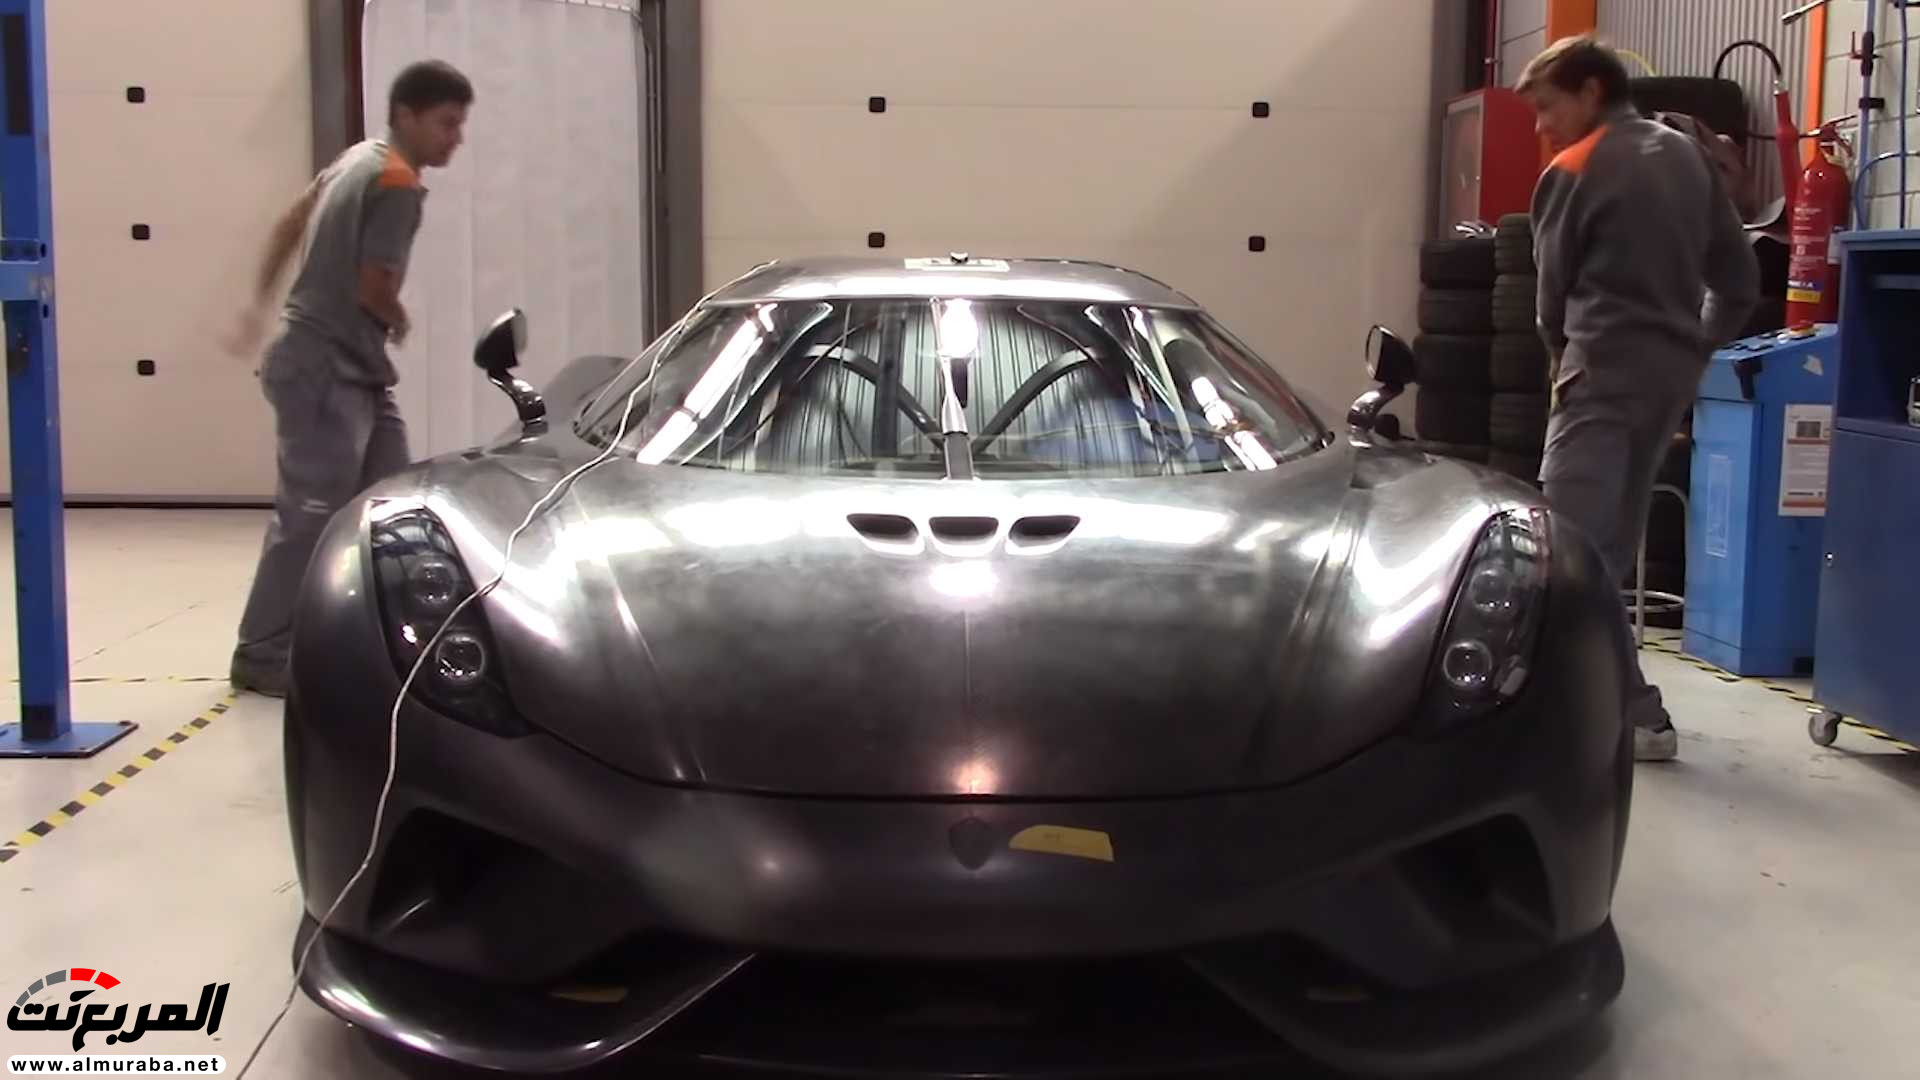 "بالفيديو" اختبار تصادم سيارة كوينيجسيج بقيمة 7.5 مليون ريال! 5